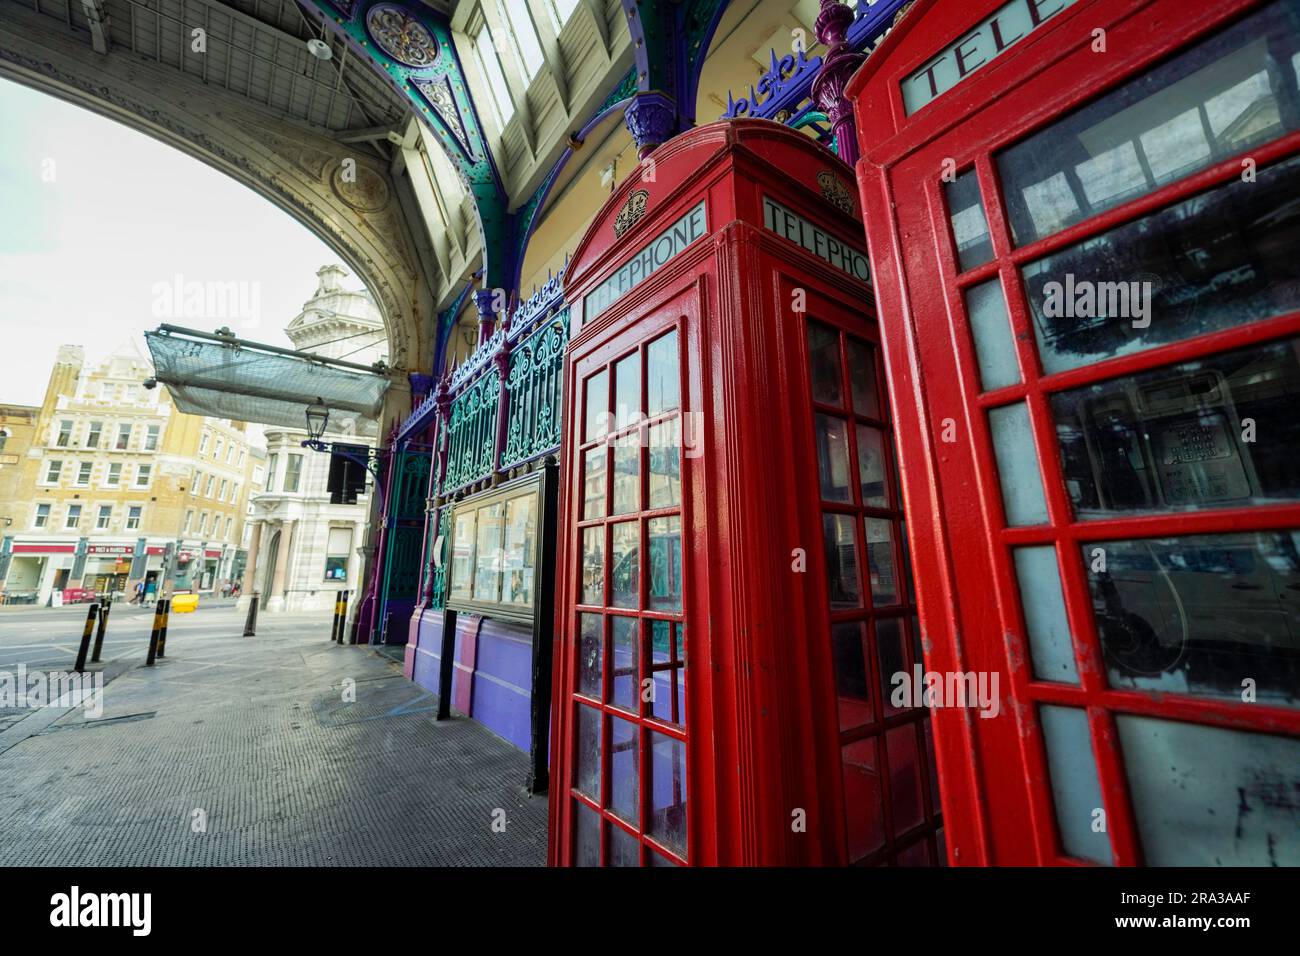 Storico mercato londinese, lo Smithfield Market presenta un'architettura vittoriana e cabine telefoniche rosse all'esterno. Chiuso al pubblico ma godetevi l'esterno. Foto Stock